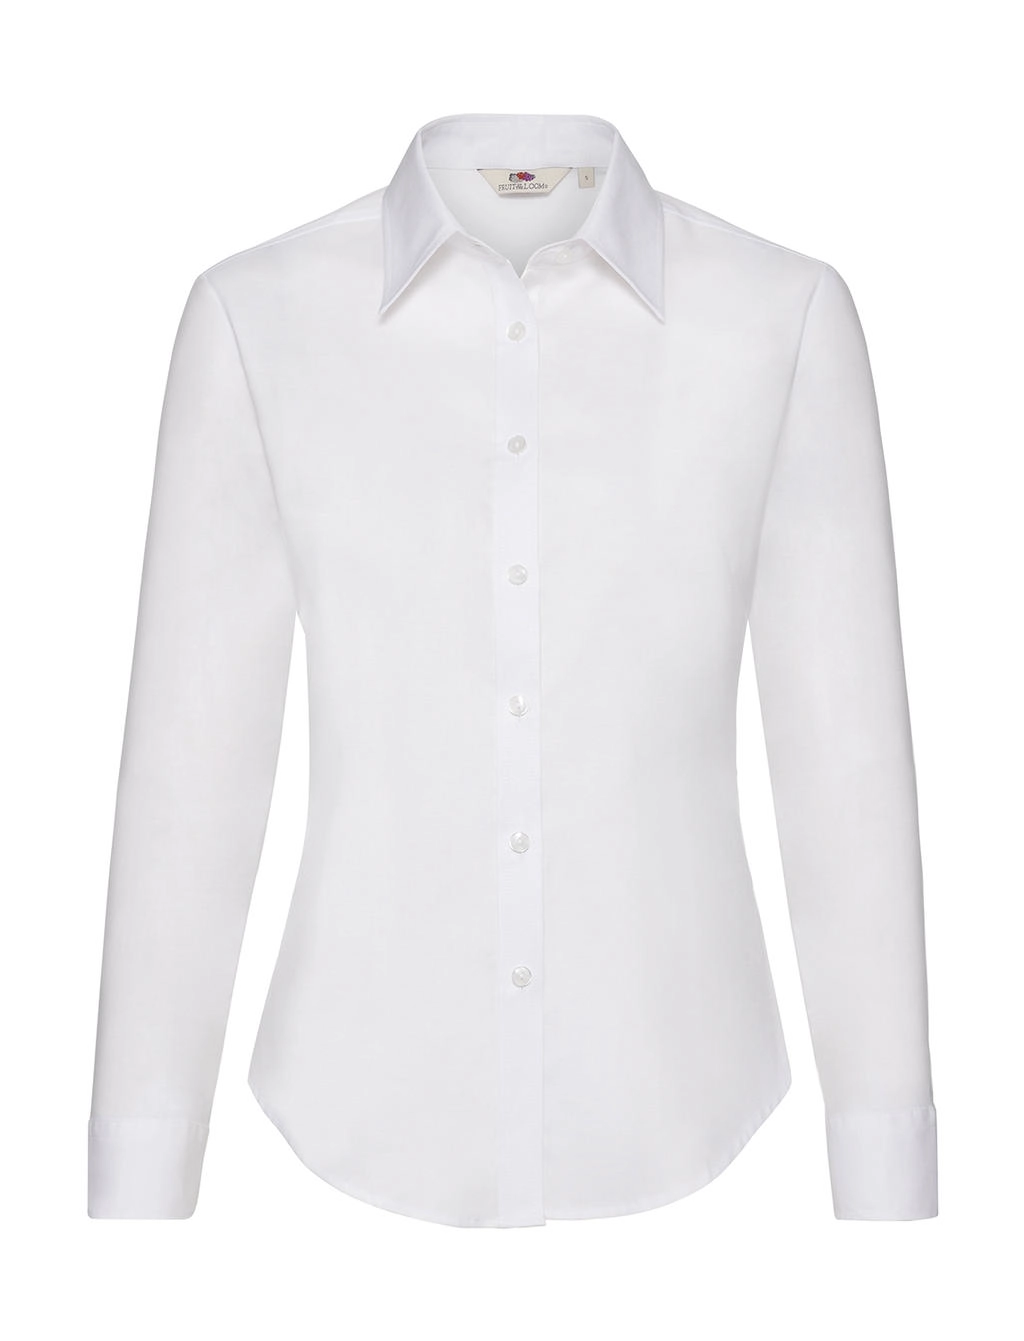 Ladies` Oxford Shirt LS zum Besticken und Bedrucken in der Farbe White mit Ihren Logo, Schriftzug oder Motiv.